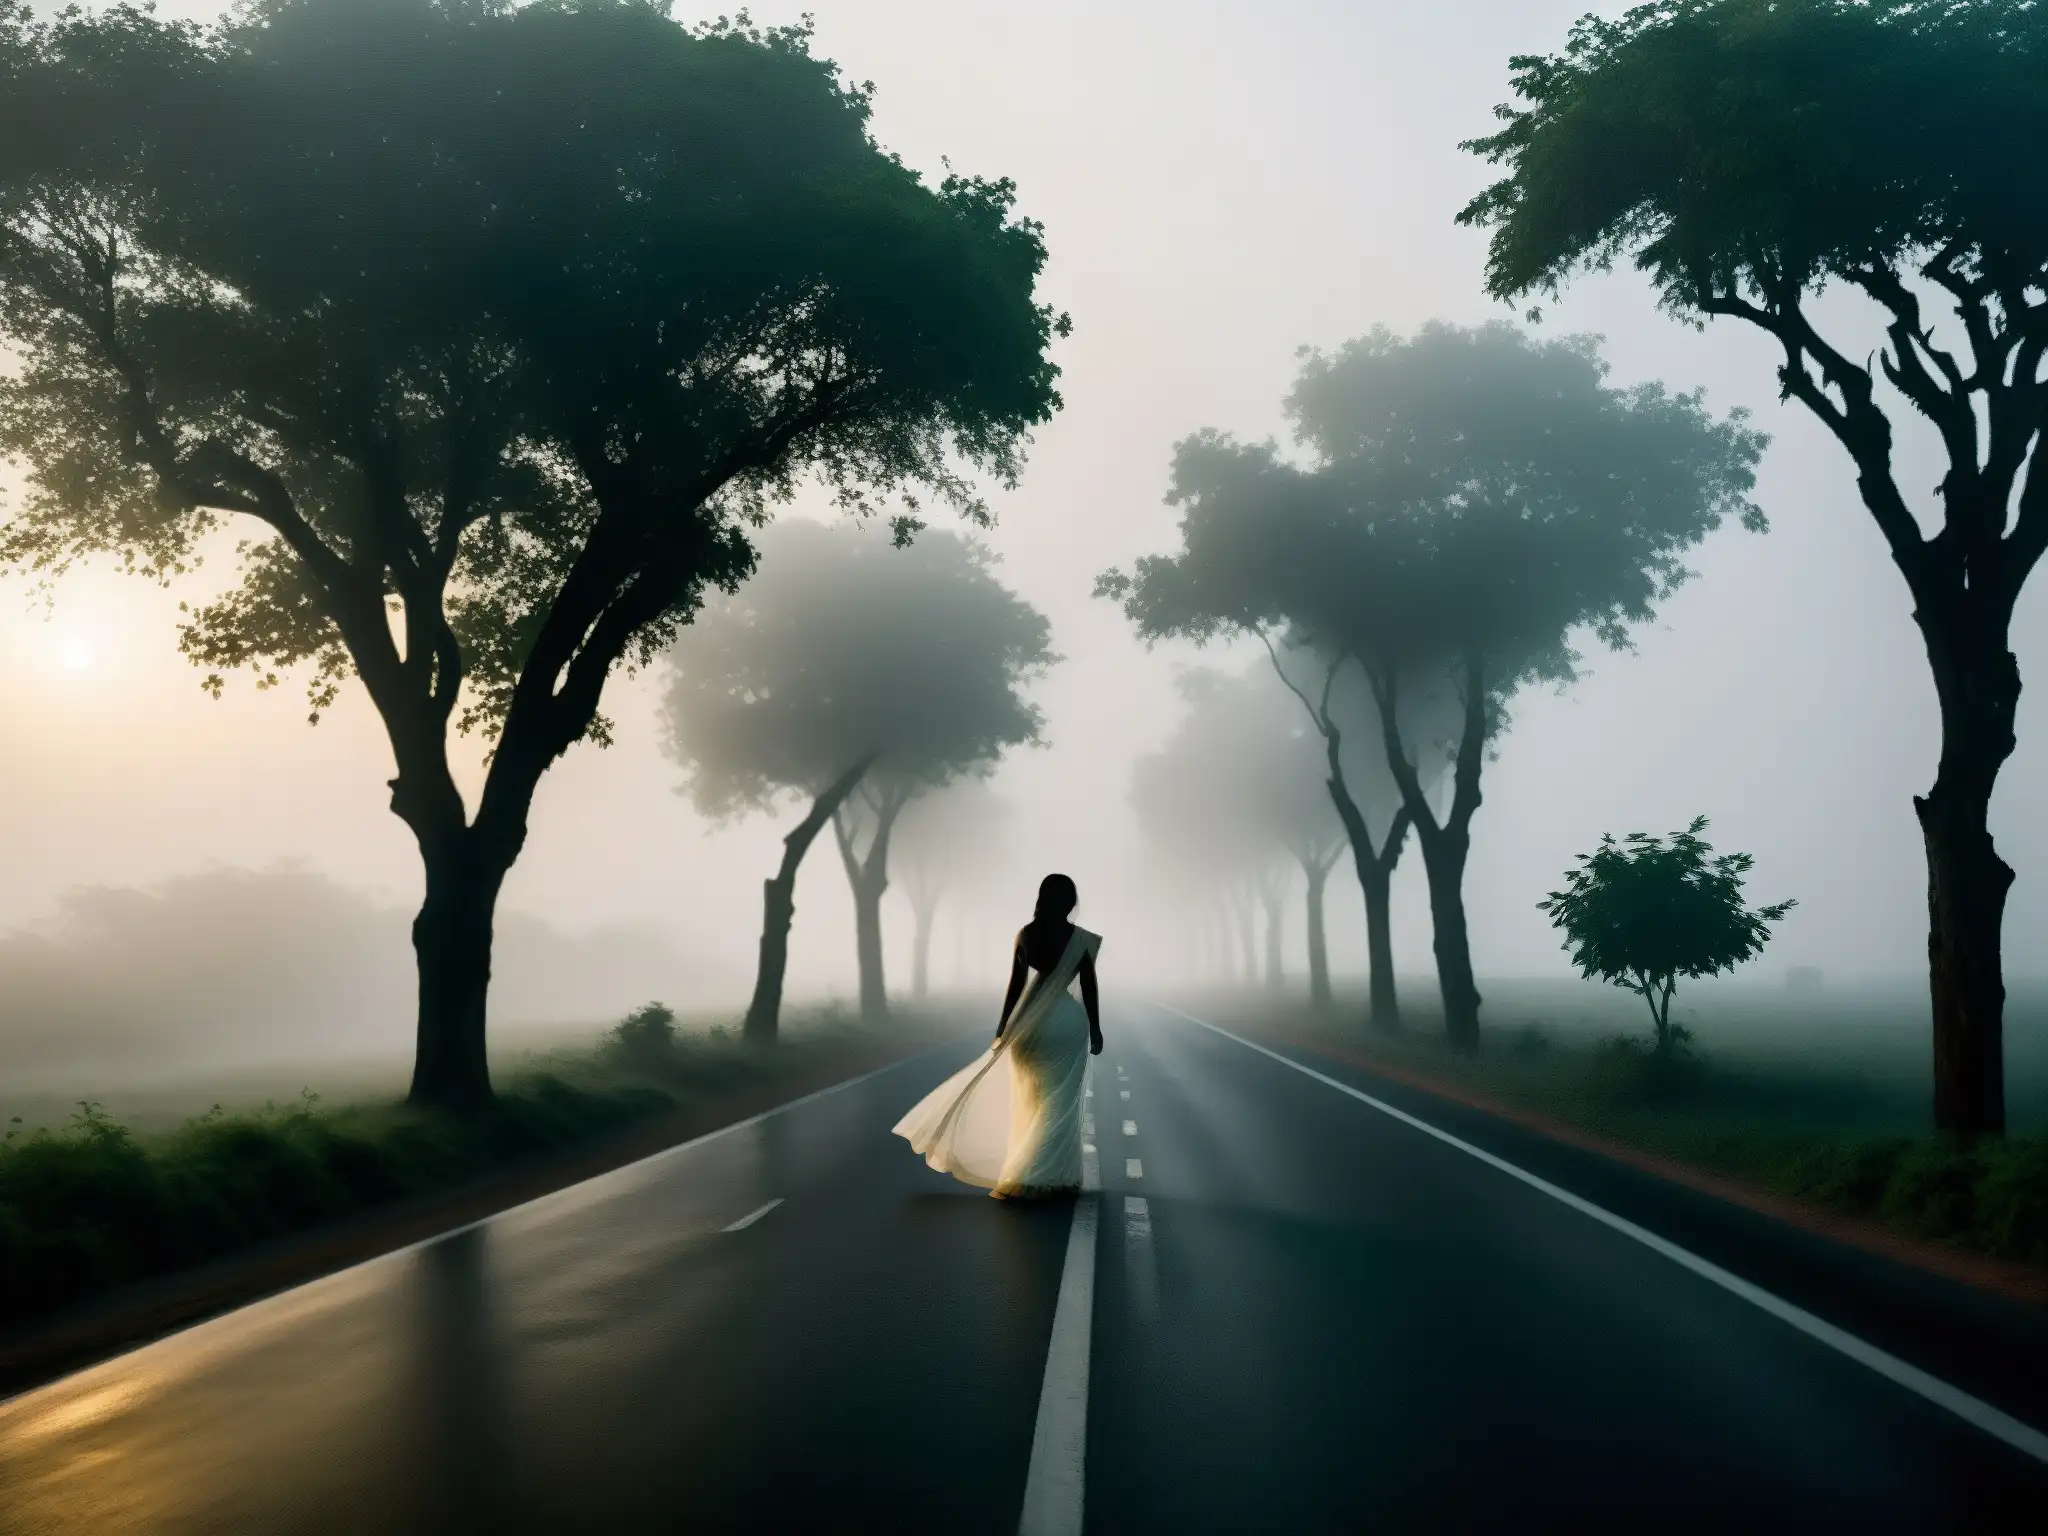 Escena misteriosa en una solitaria carretera de la India, con la aparición de una mujer blanca en un sari, iluminada por faros distantes